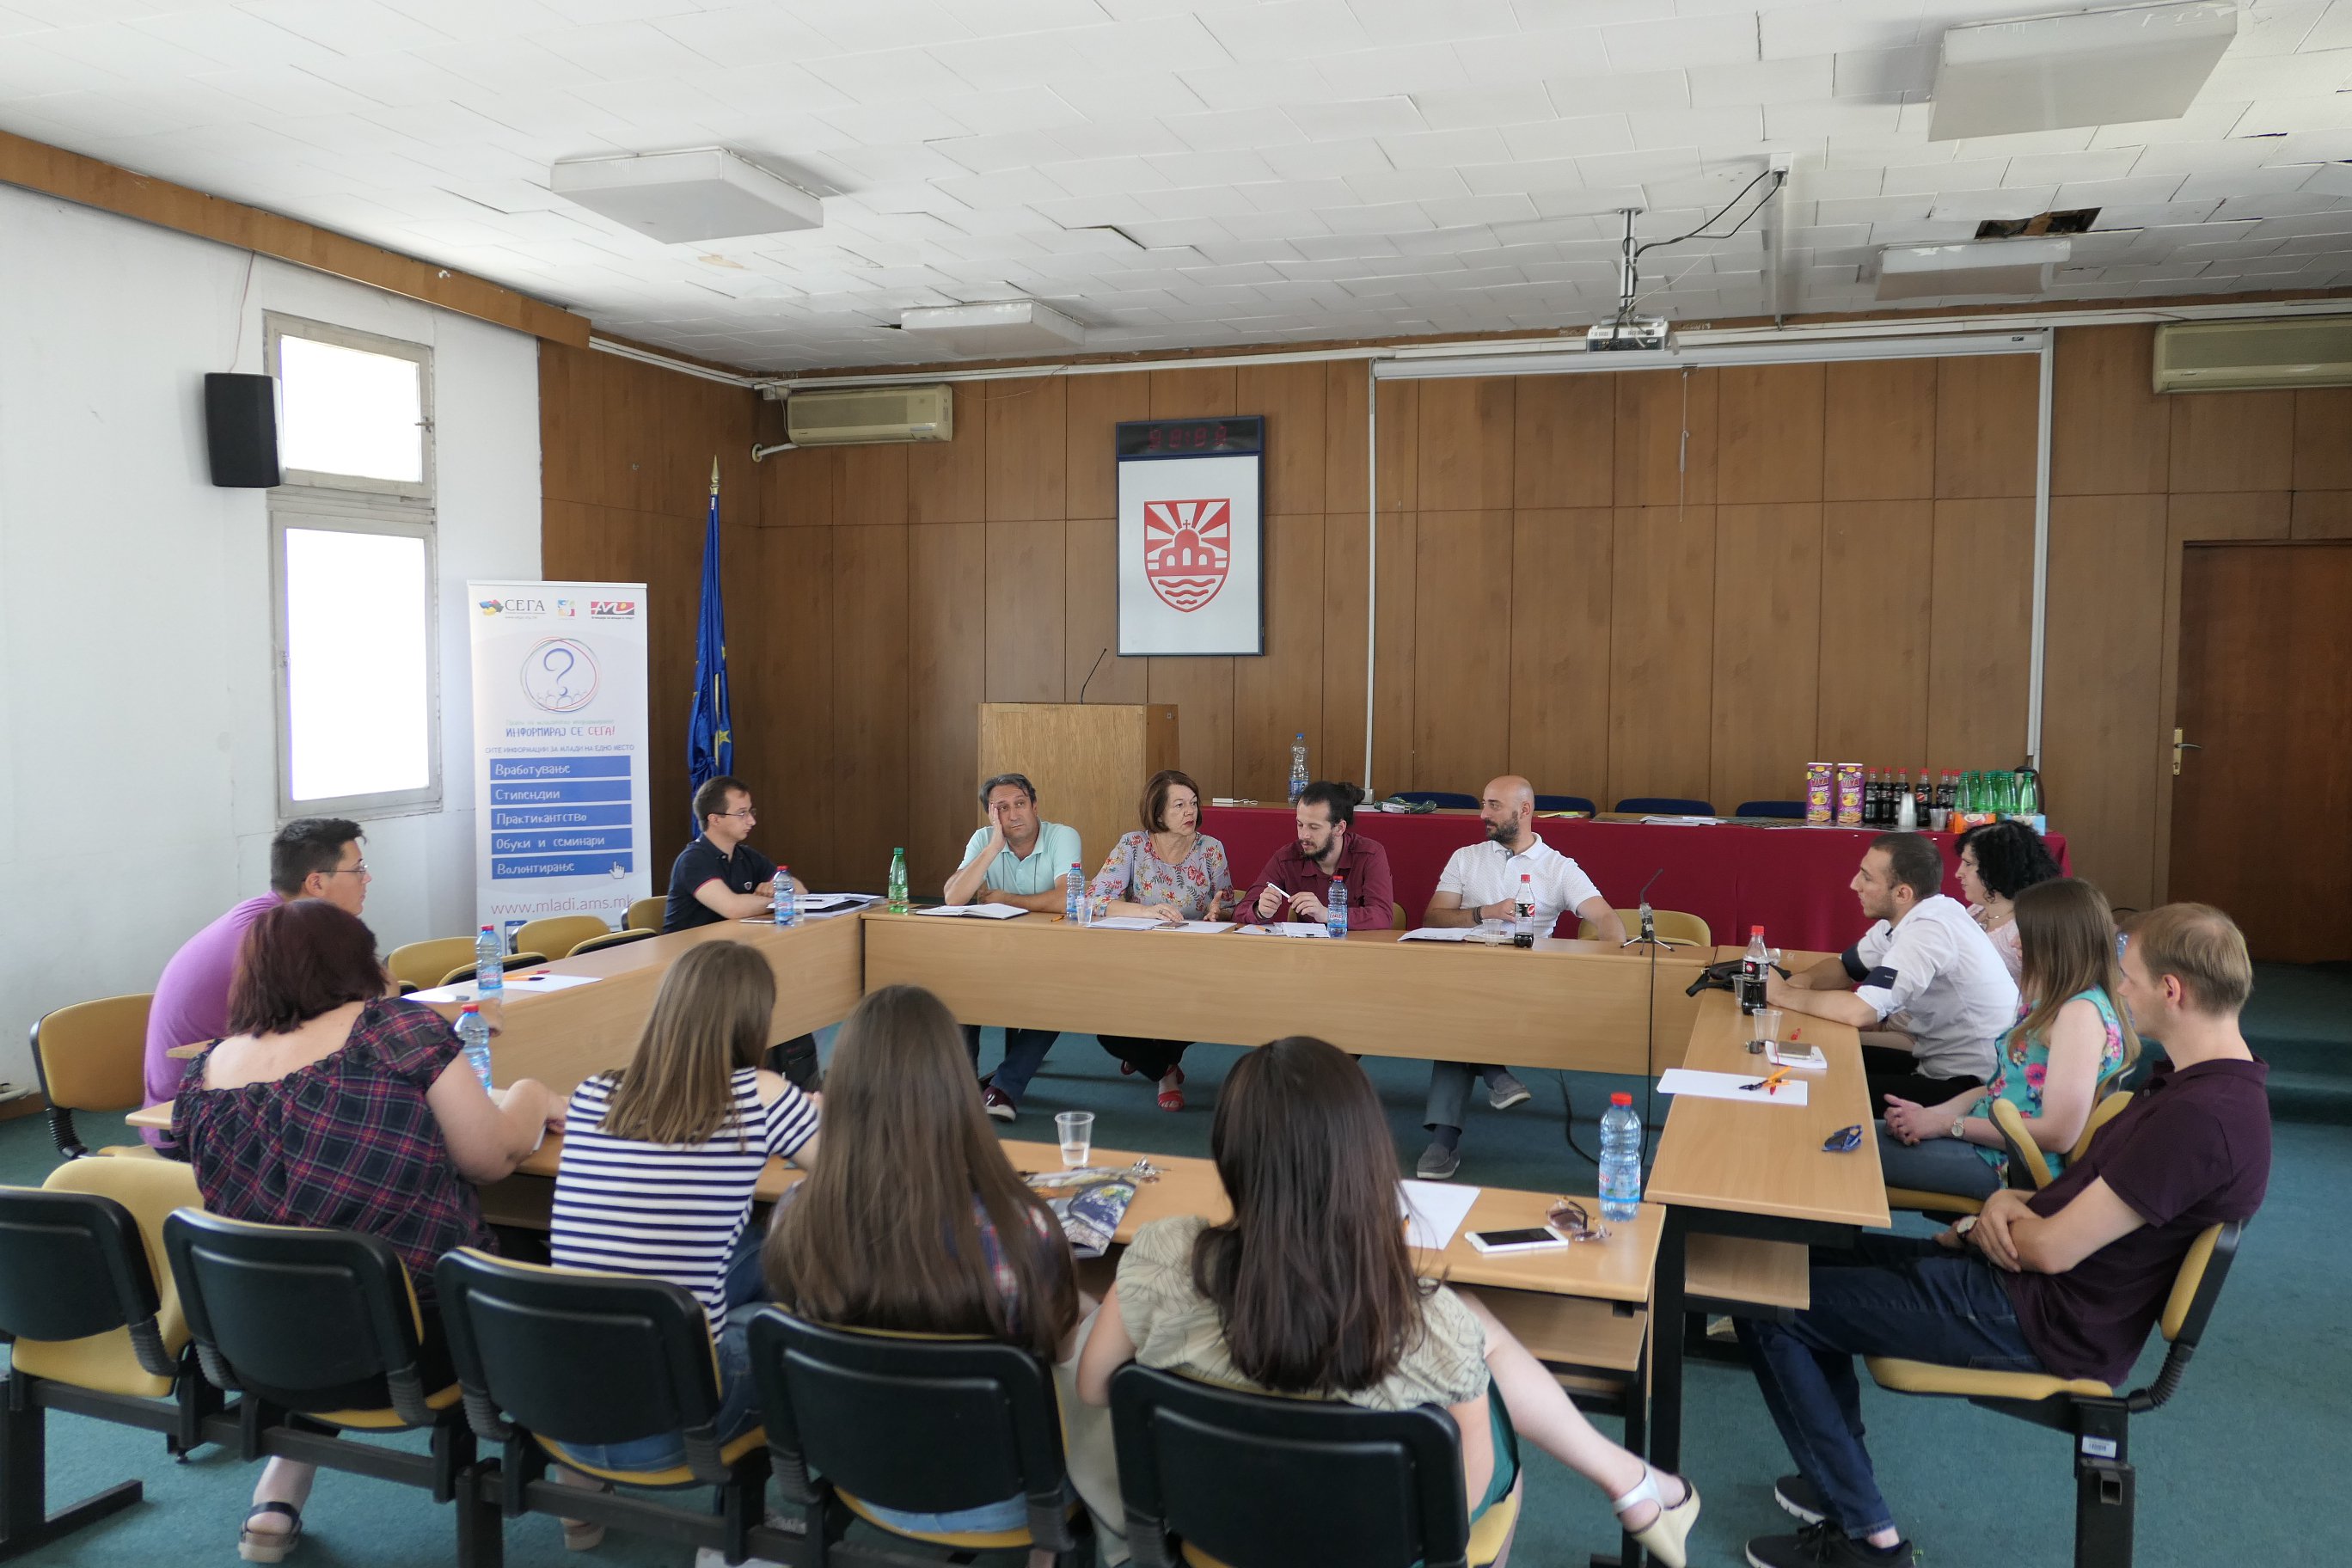 You are currently viewing (Македонски) Панел дискусија: Предизвици на практикување на волонтерство во заедницата